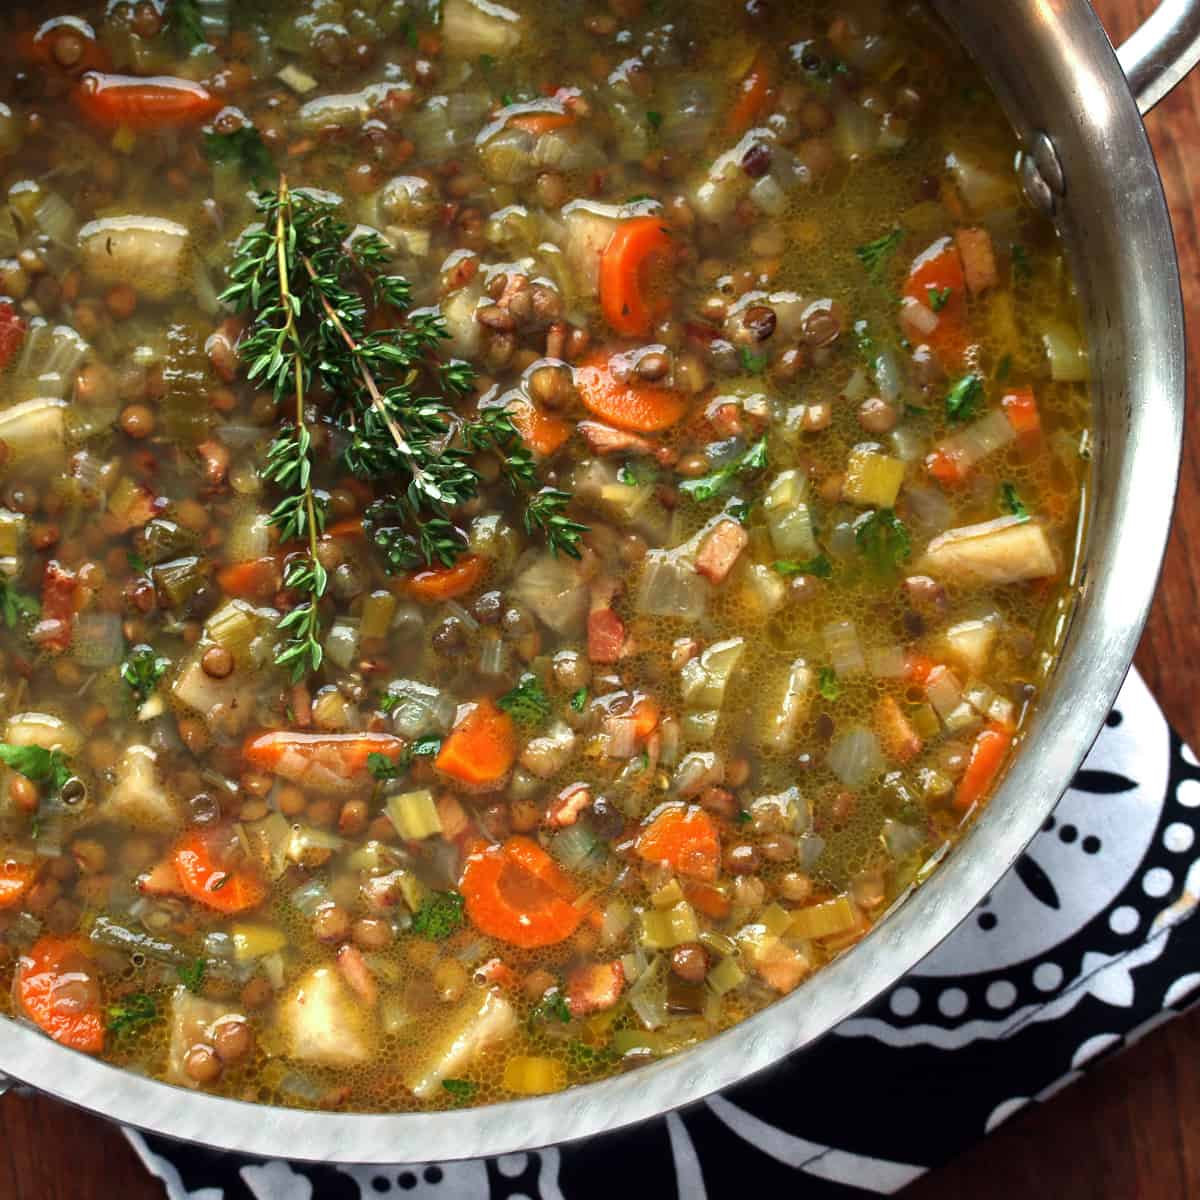 french lentil soup recipe traditional authentic best leek celeriac bacon puy lentils